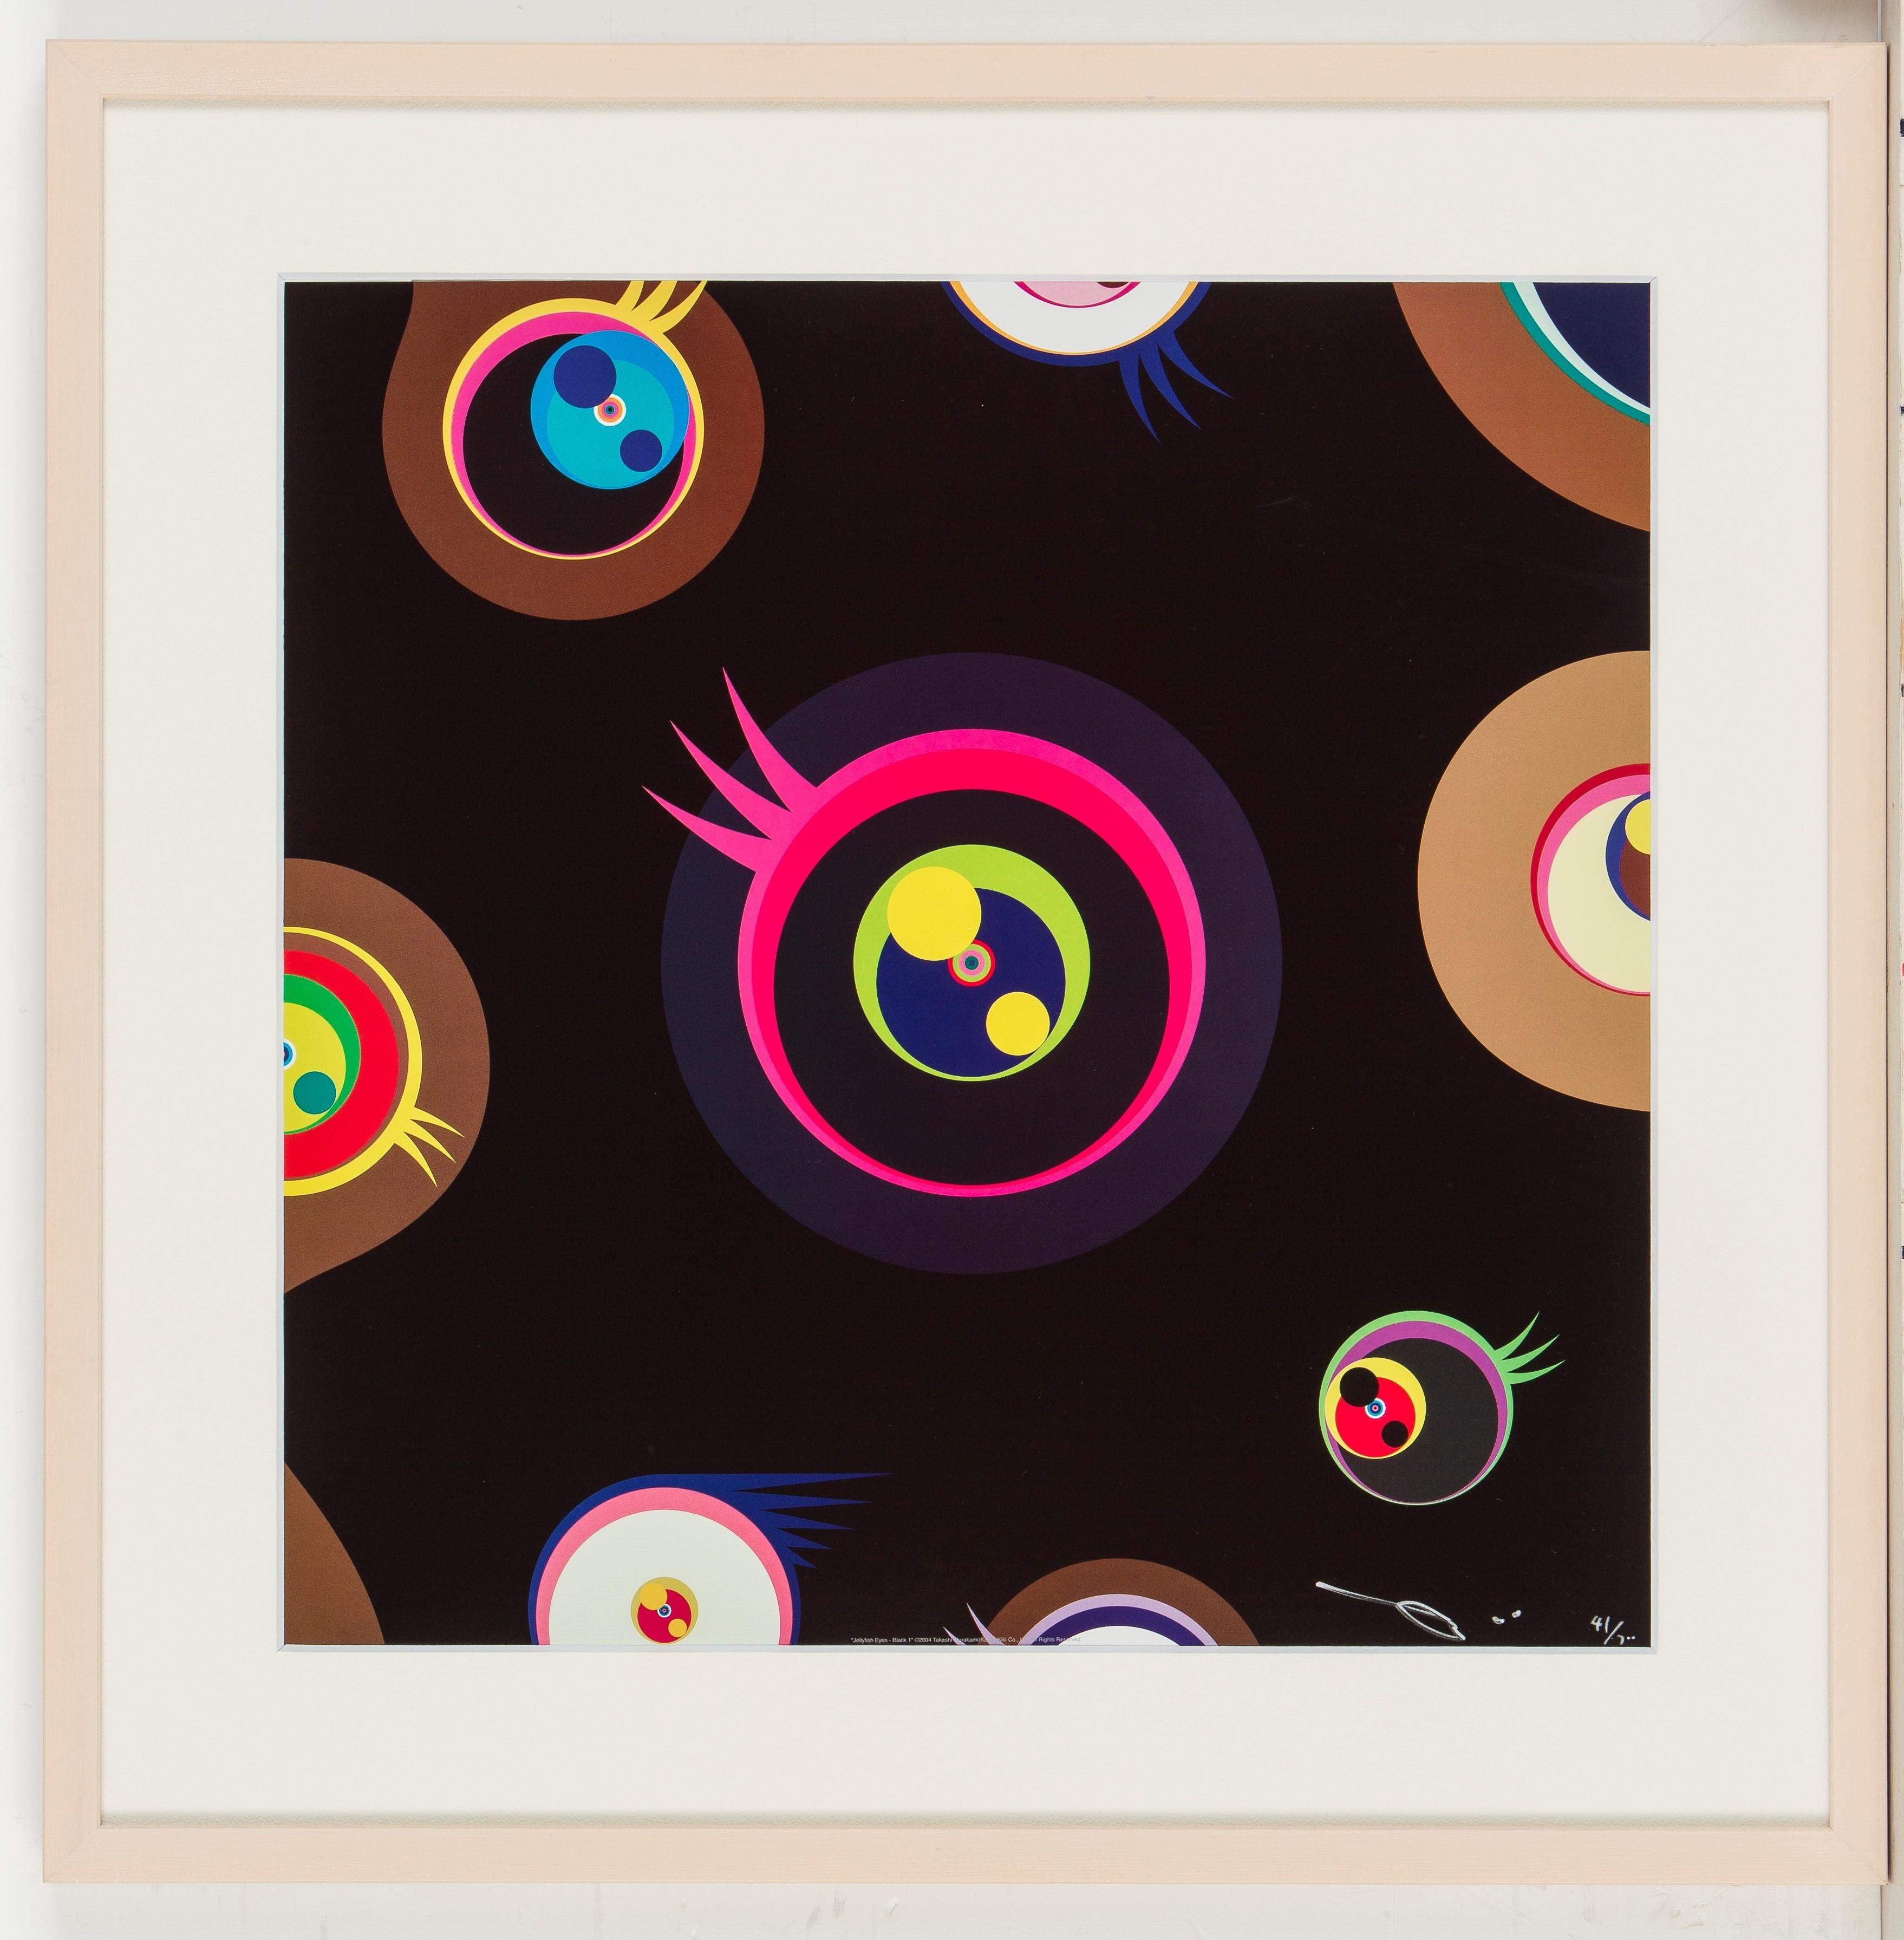 Les yeux de la méduse - Noir 1 de Takashi Murakami (2004)
Impression offset, numérotée et signée par l'artiste
19 ¹¹/₁₆ × 19 ¹¹/₁₆ in
50 × 50 cm
Edition  41/300

Takashi Murakami est surtout connu pour sa combinaison contemporaine de beaux-arts et